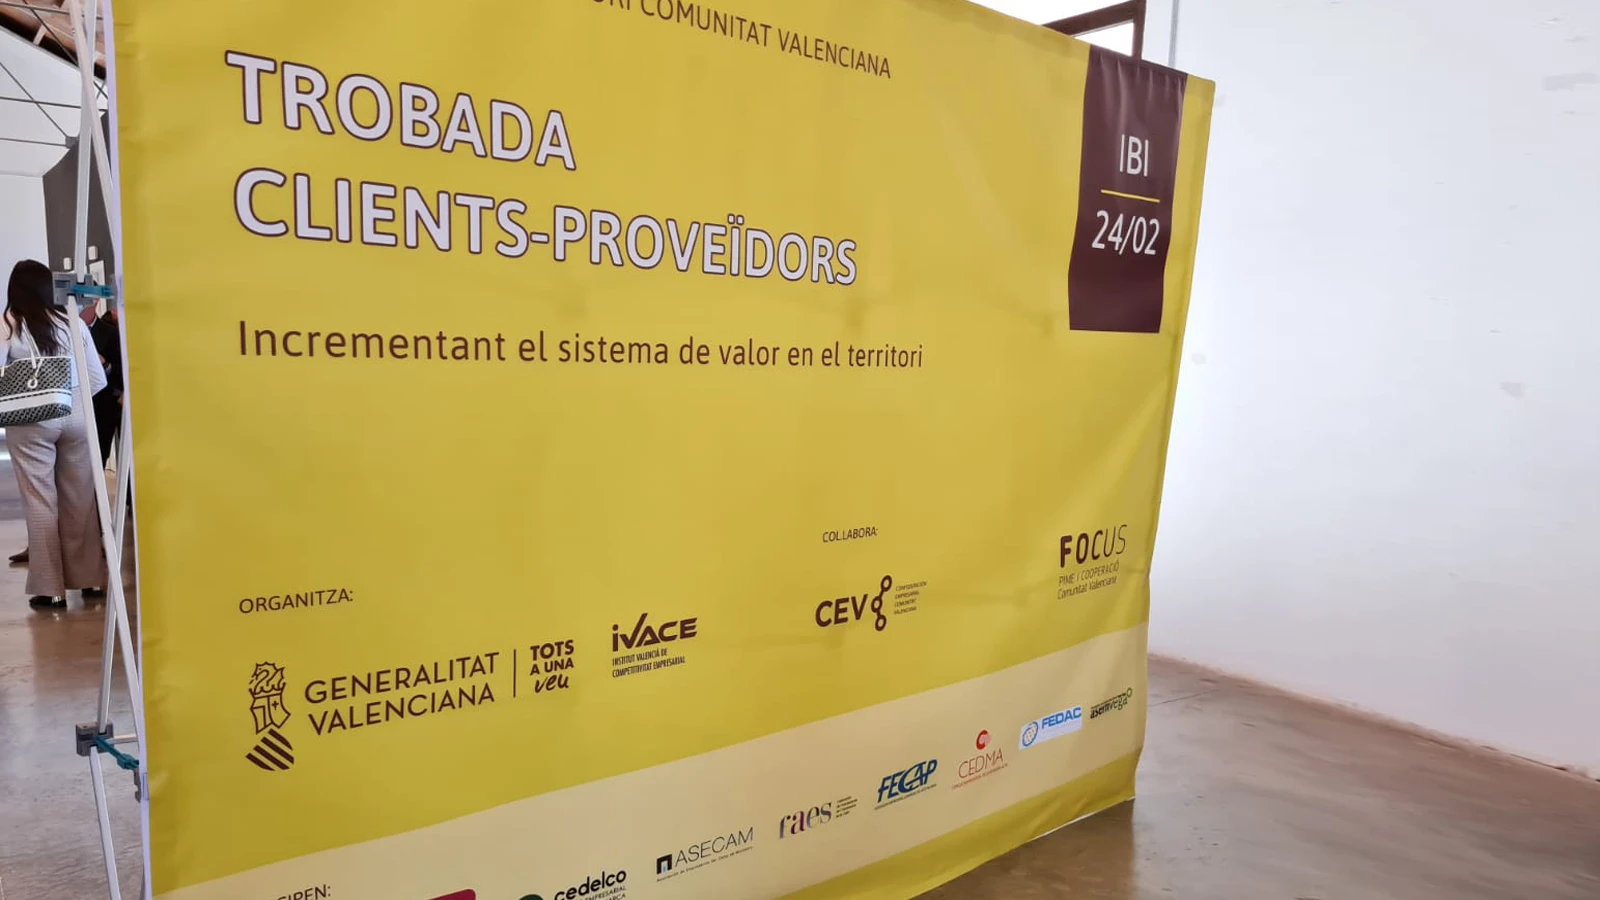 Imágen relacionada de la noticia “Encuentro clientes-proveedores de la CV” celebrado en IBI (Alicante).